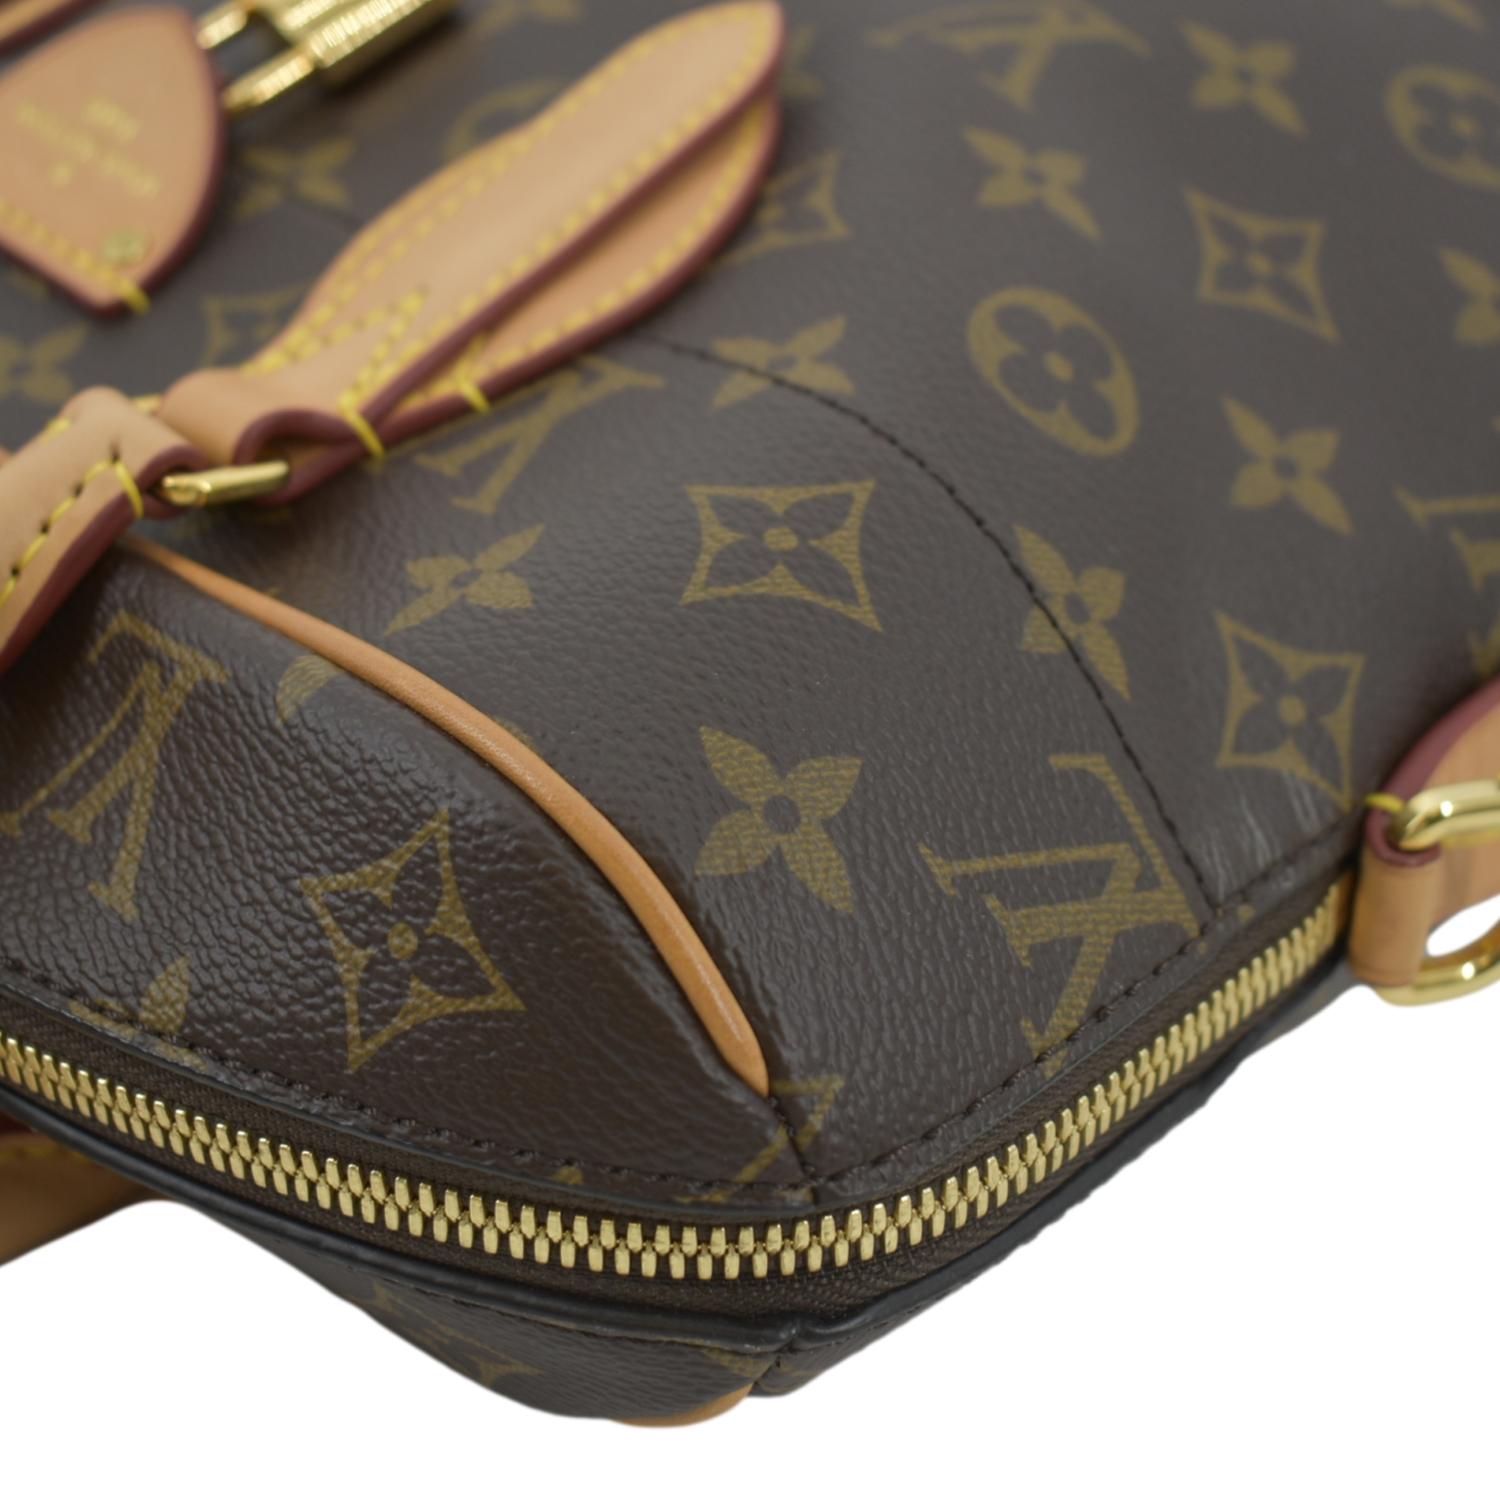 Louis Vuitton Carry NM Monogram Canvas Shoulder Bag